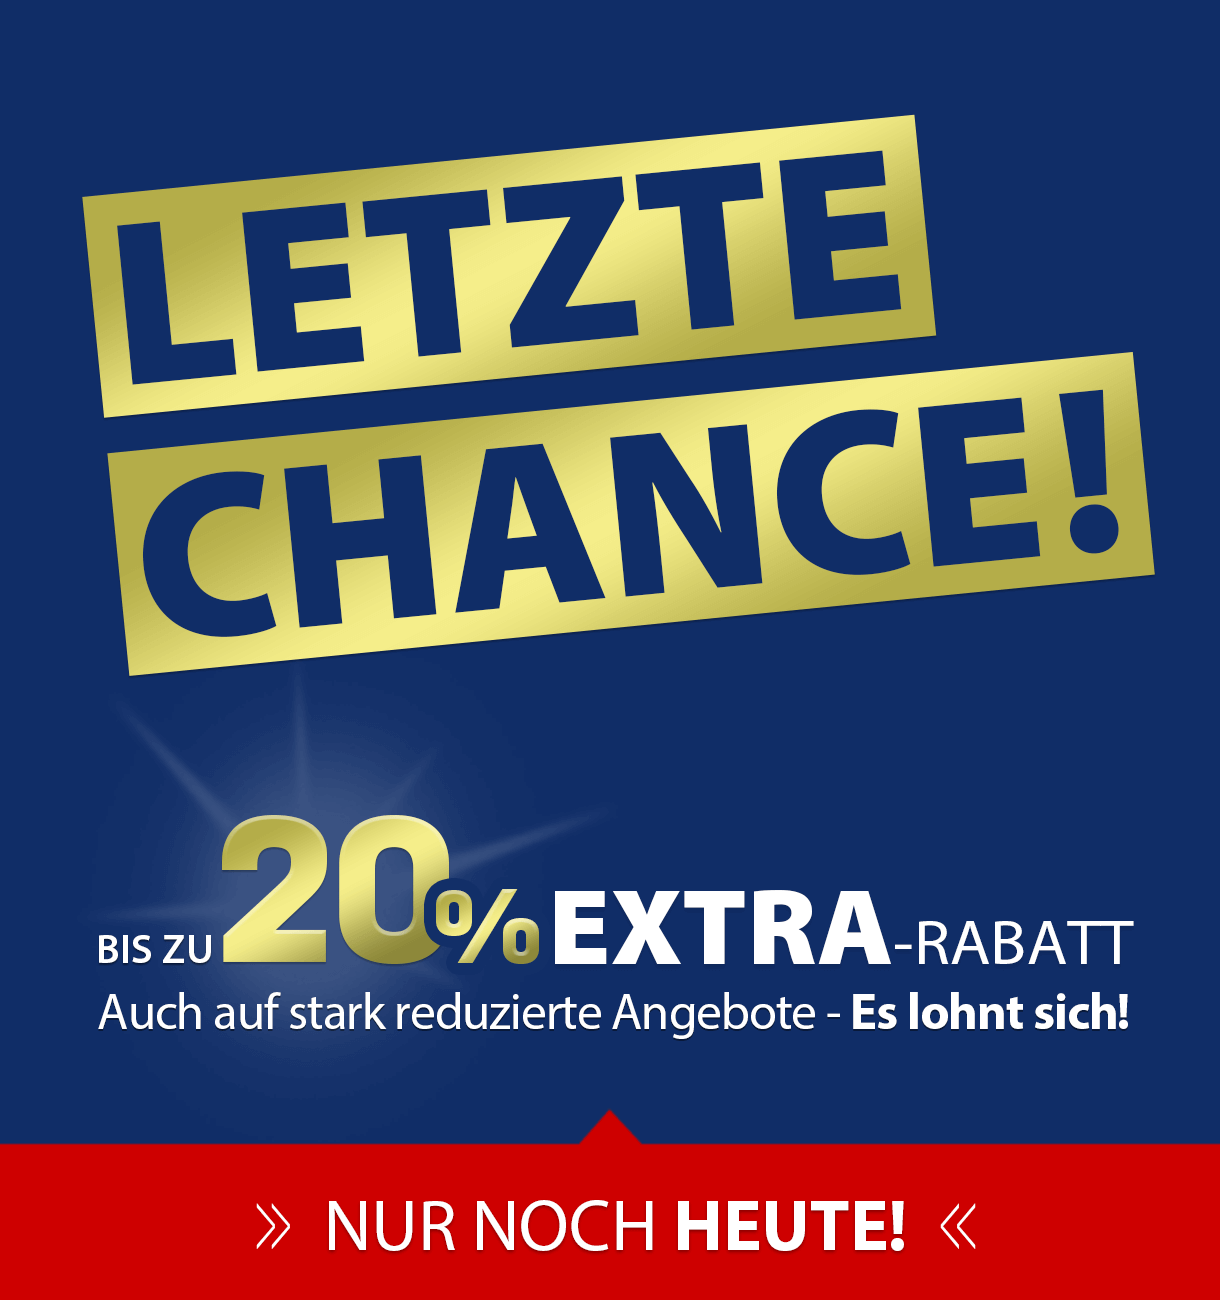 LETZTE CHANCE!! >> bis zu 20% EXTRA-RABATT!!